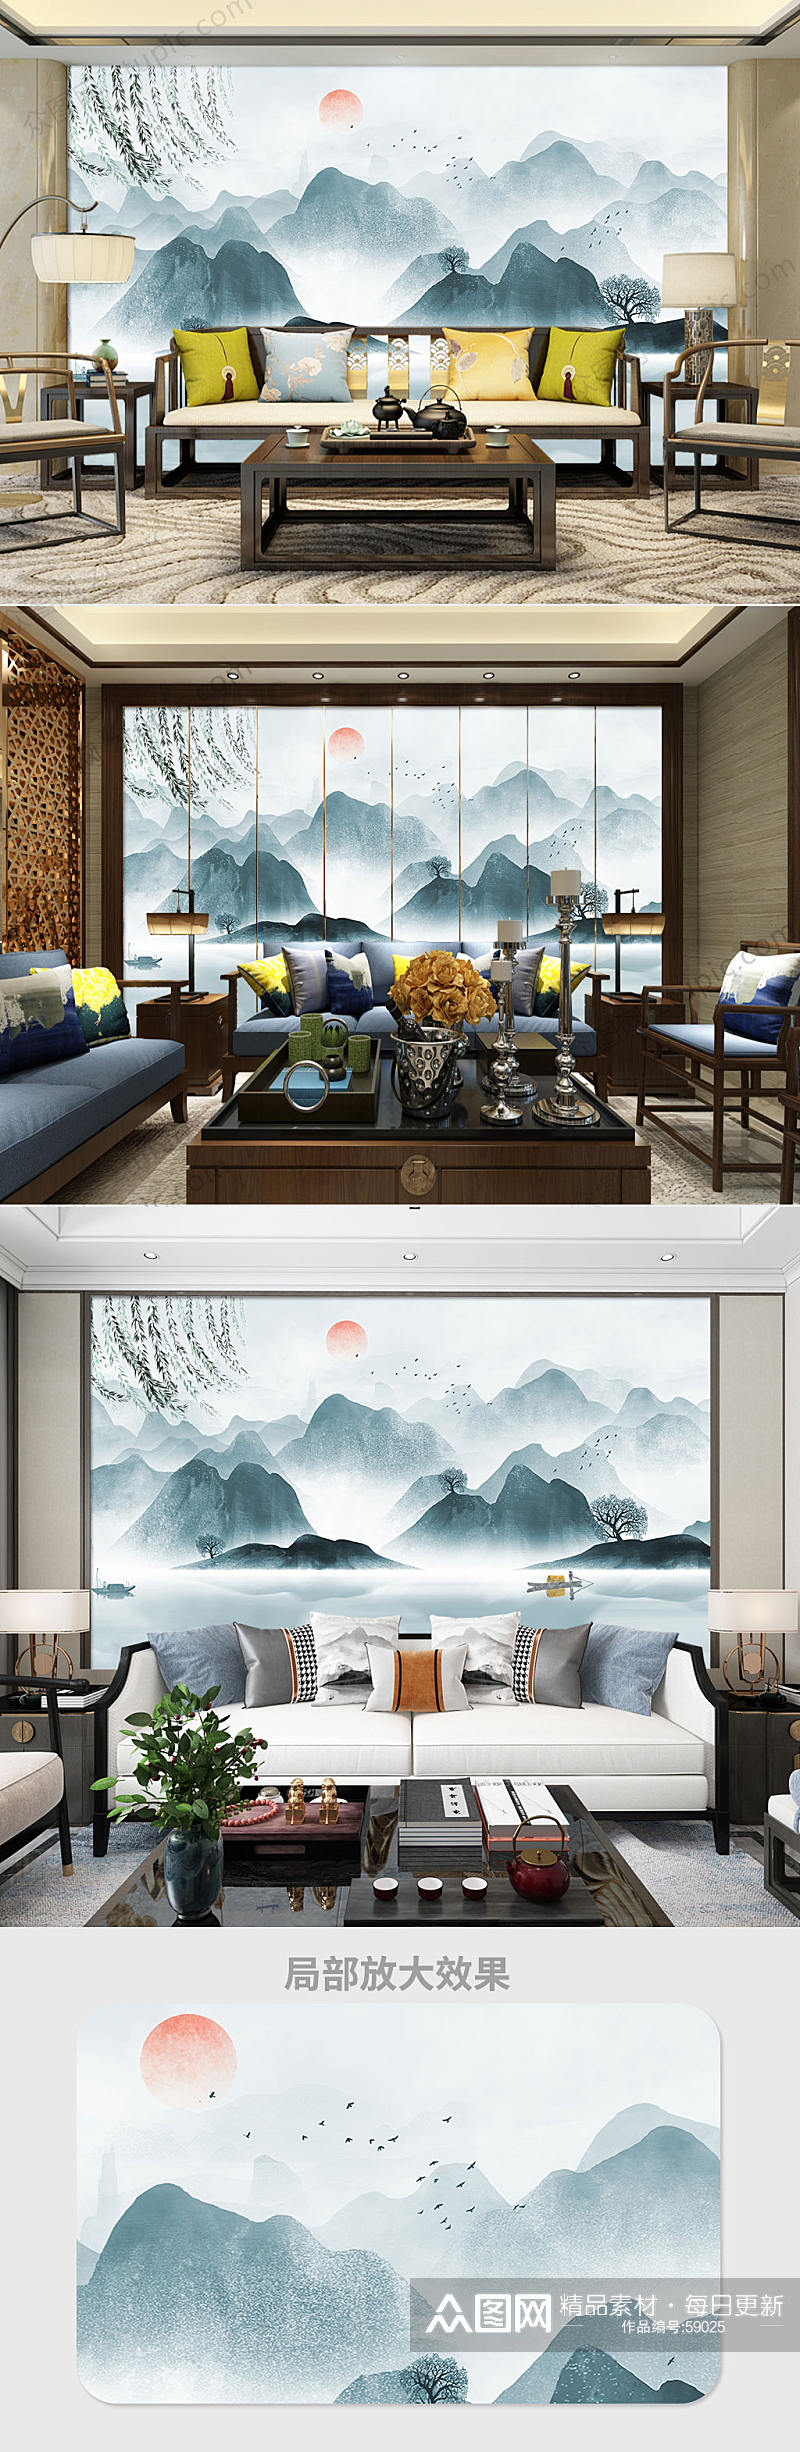 意境山水水墨中国风背景墙素材